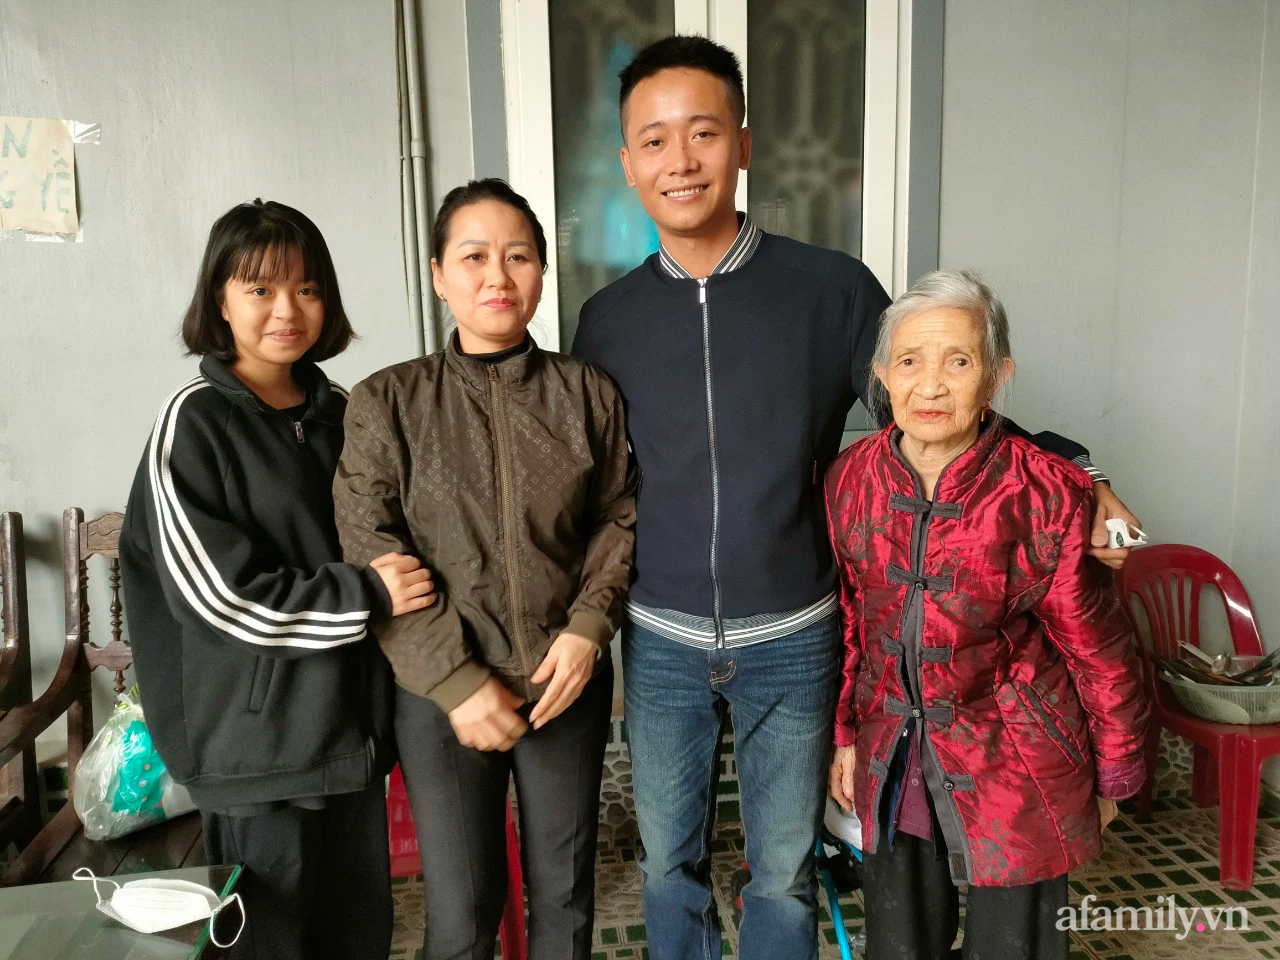 Tết đoàn viên bên gia đình của Quang Linh Vlogs- chàng lao động thổi hồn văn hoá Việt khởi sắc đất nước Châu Phi - Ảnh 1.